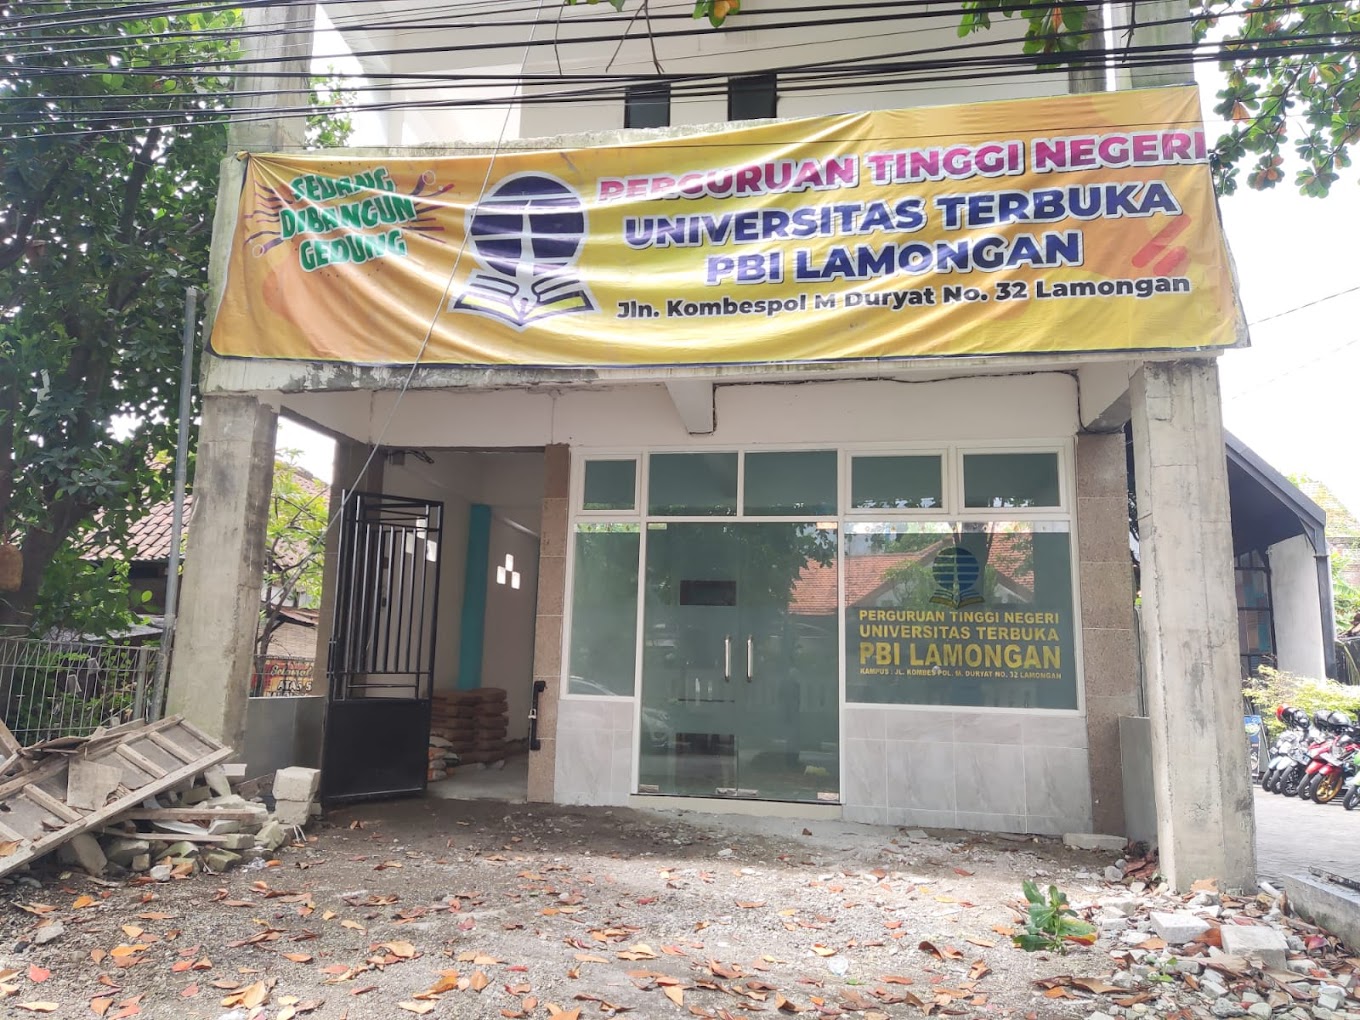 Universitas Terbuka Pbi Lamongan - Lamongan, Jawa Timur